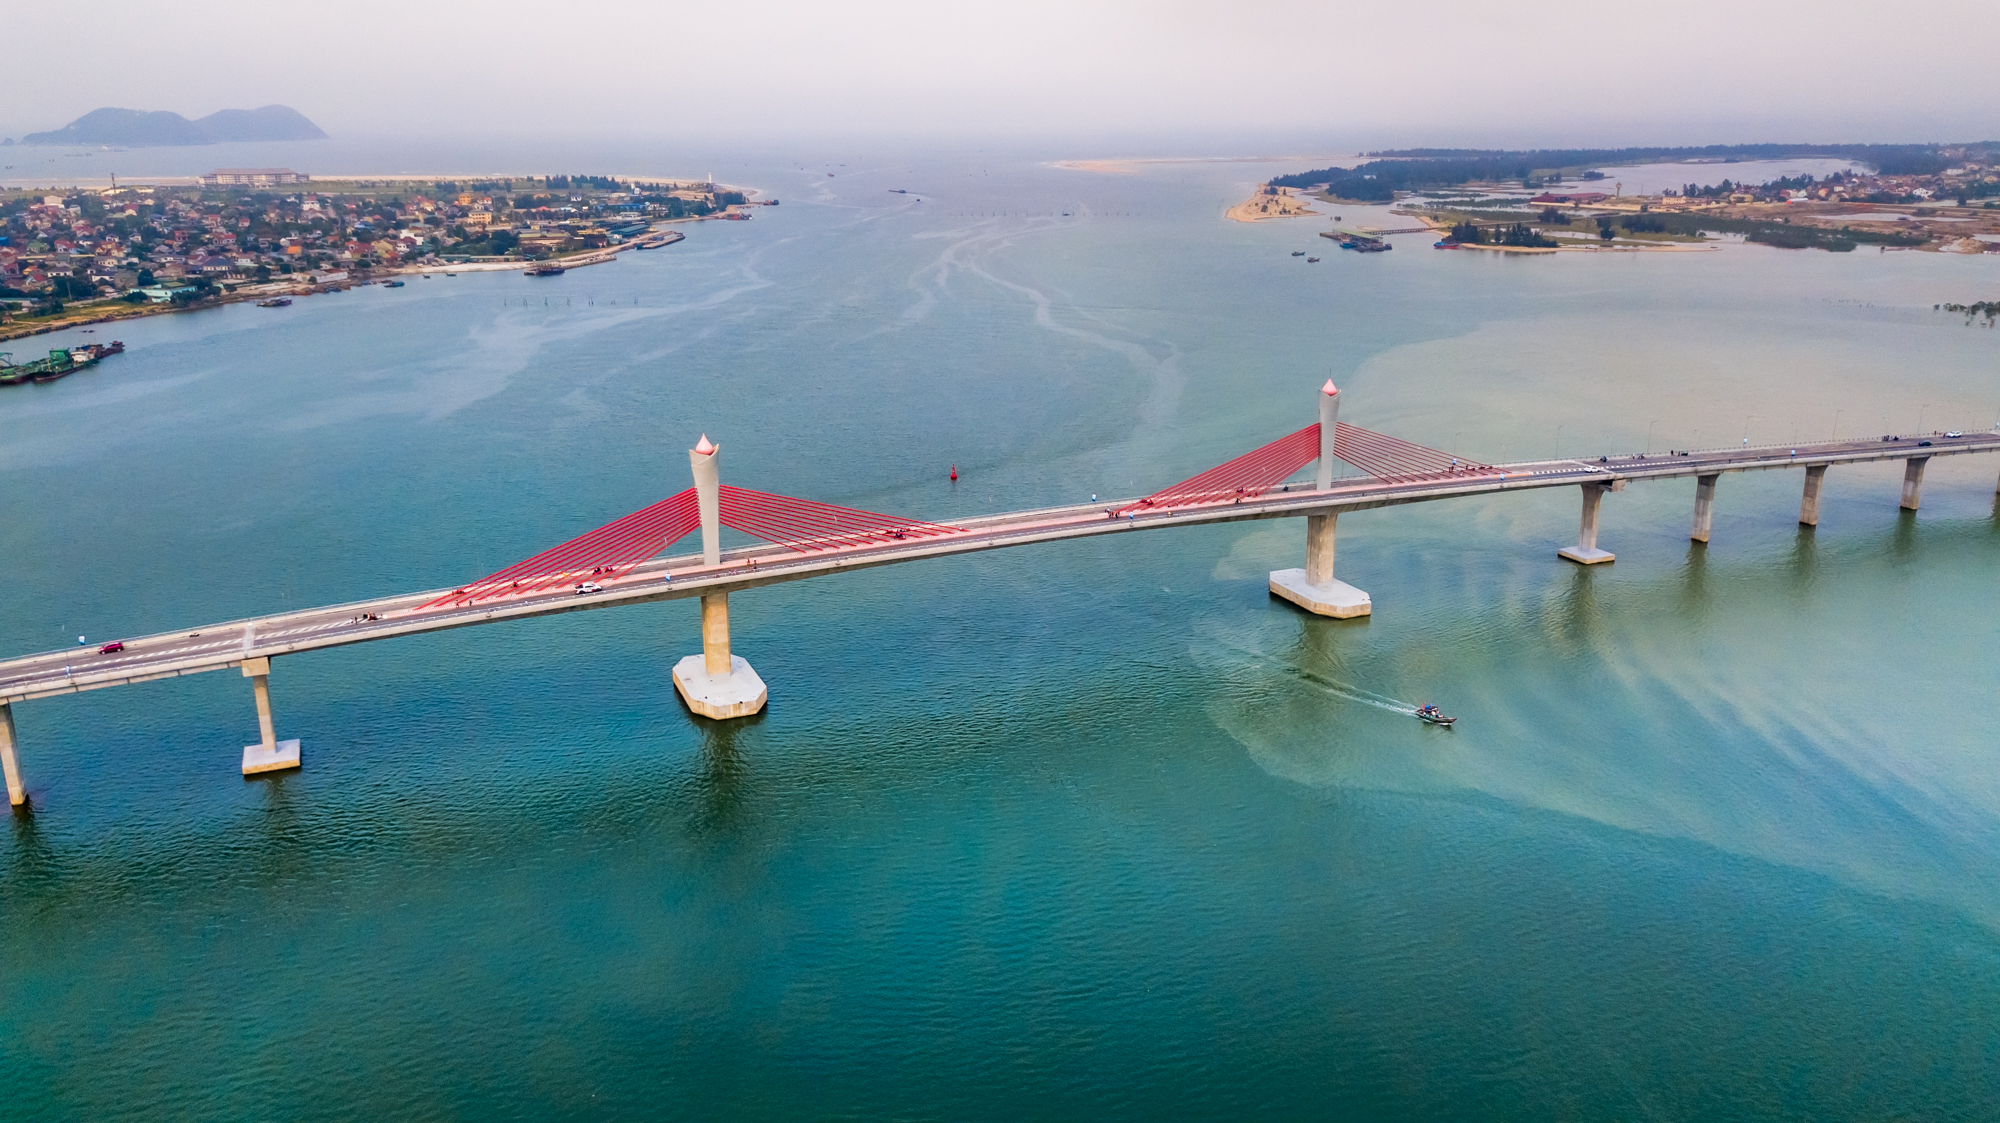 Cầu Cửa Hội bắc qua sông Lam sẽ kết nối giao thương giữa 2 tỉnh Nghệ An và Hà Tĩnh. Ảnh: Lê Thắng